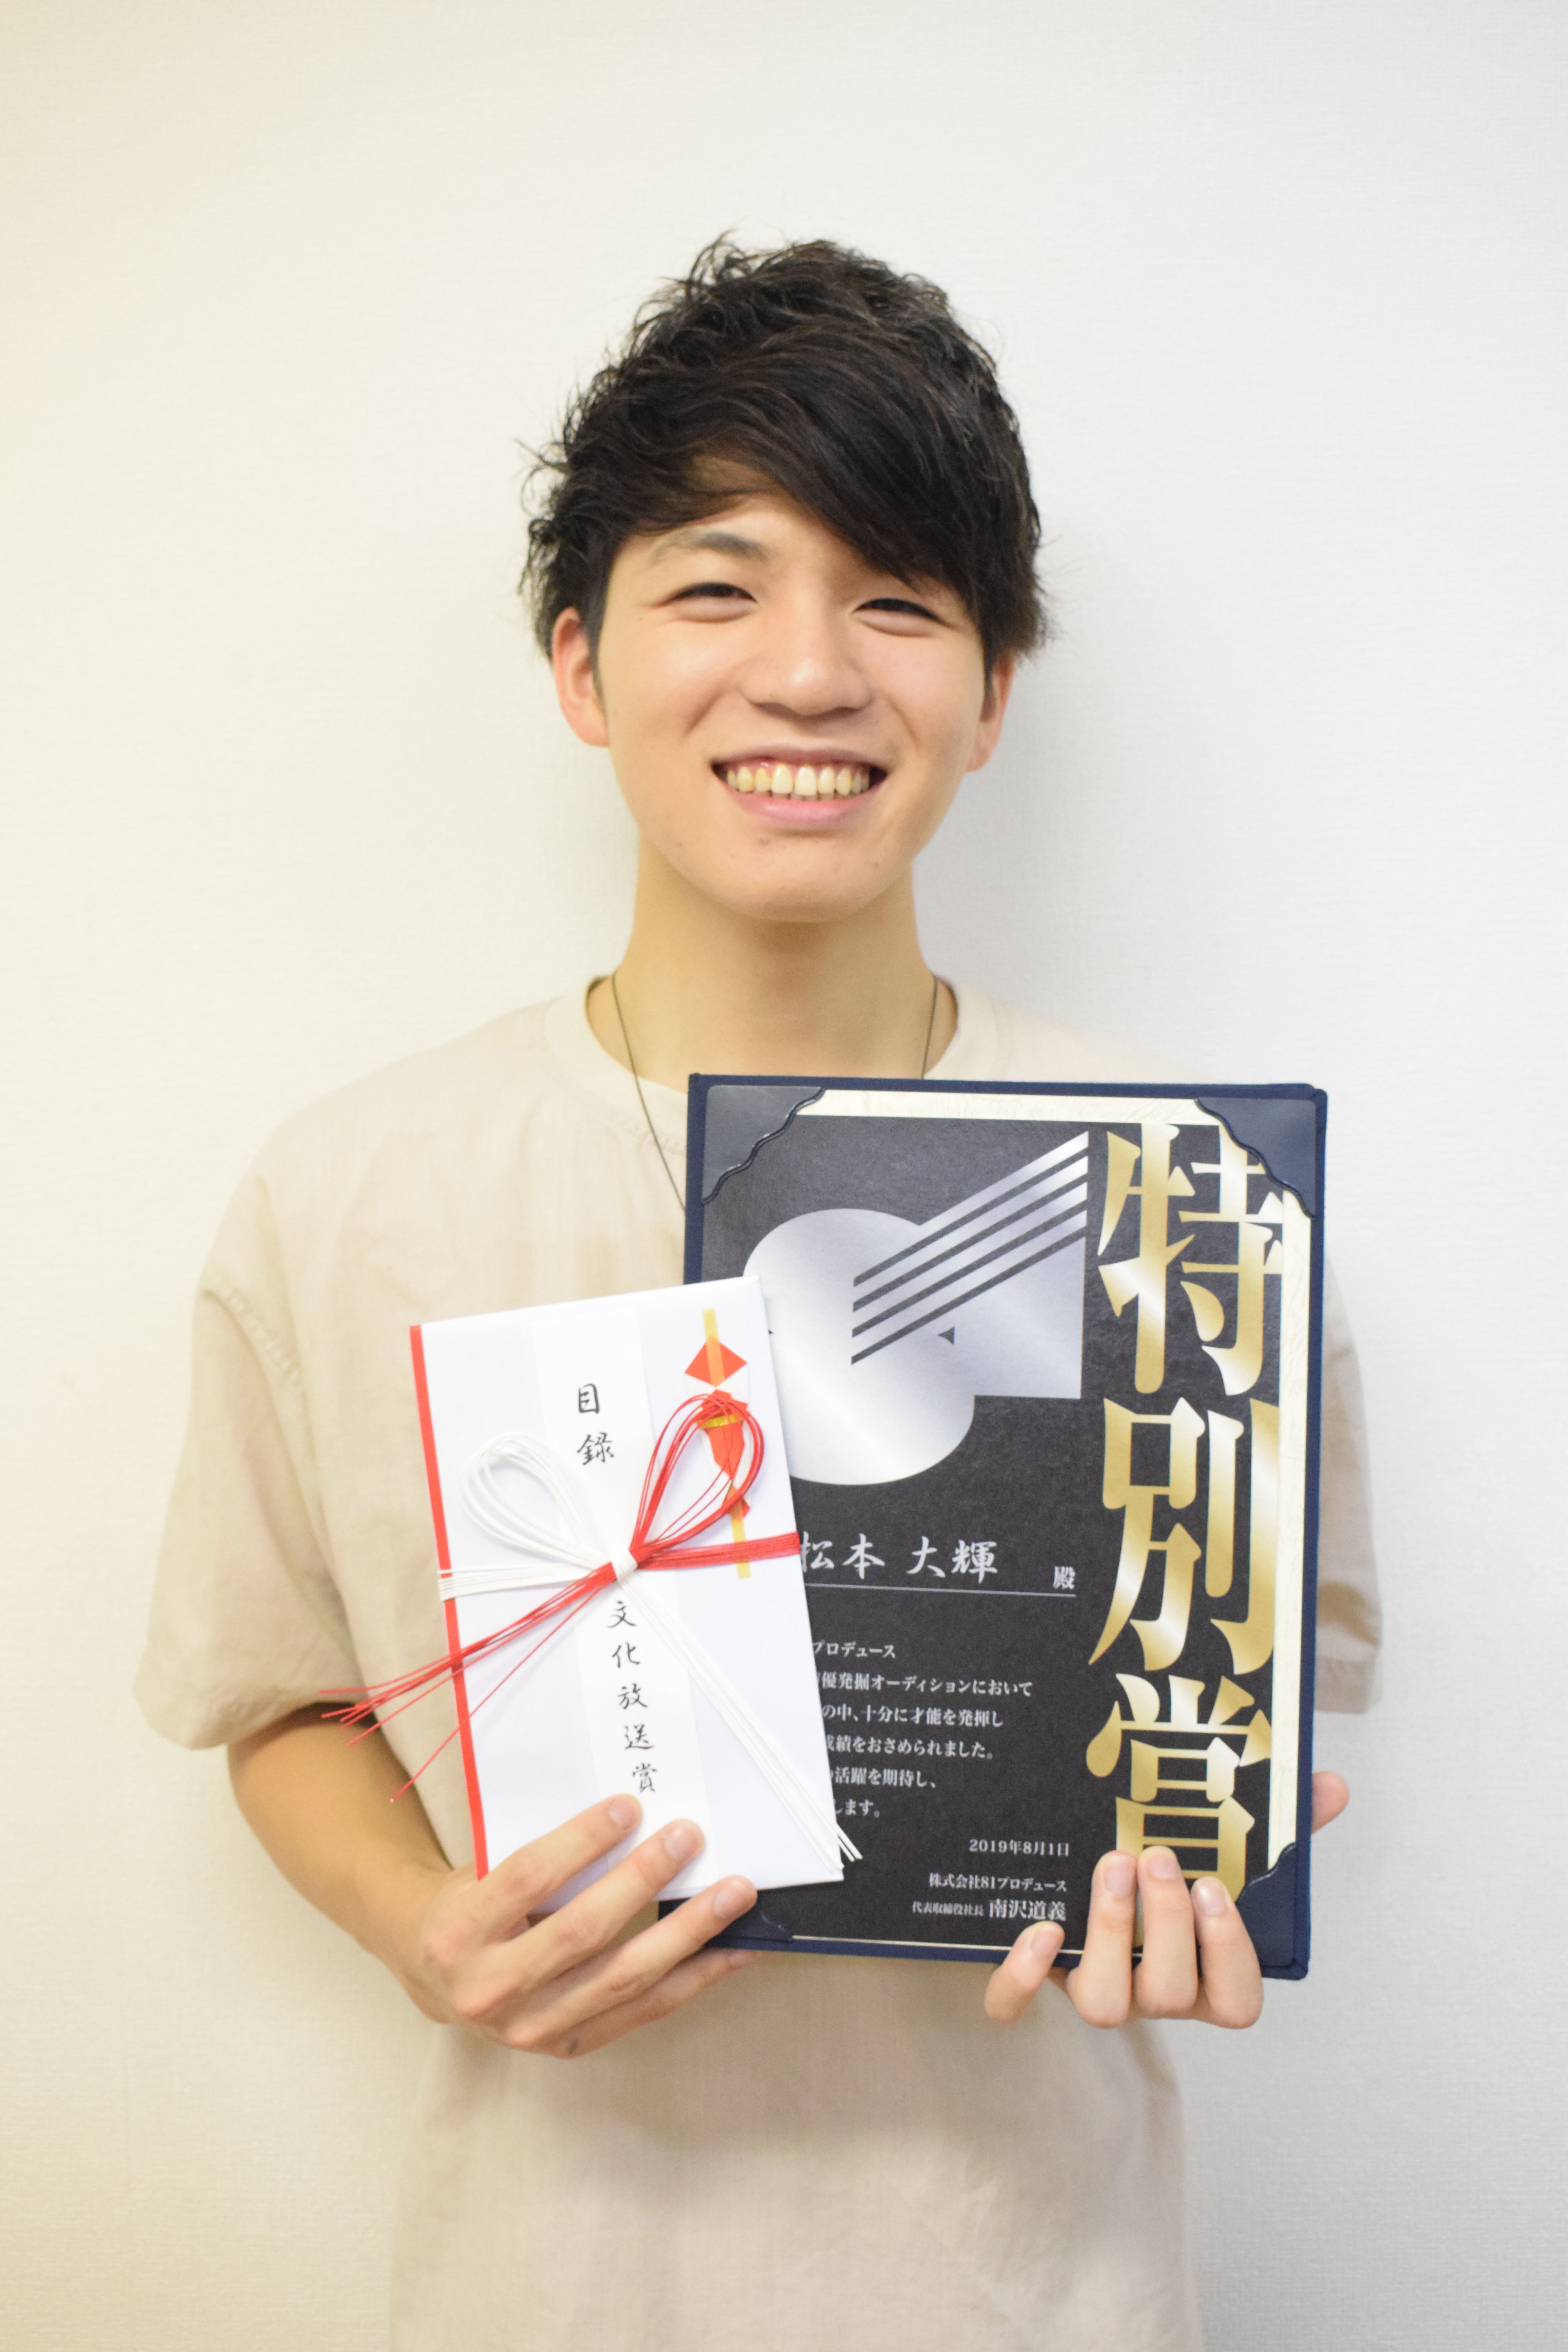 81プロデュース主催の「81オーディション」で声優学科 在校生の松本 大輝君がダブル受賞！